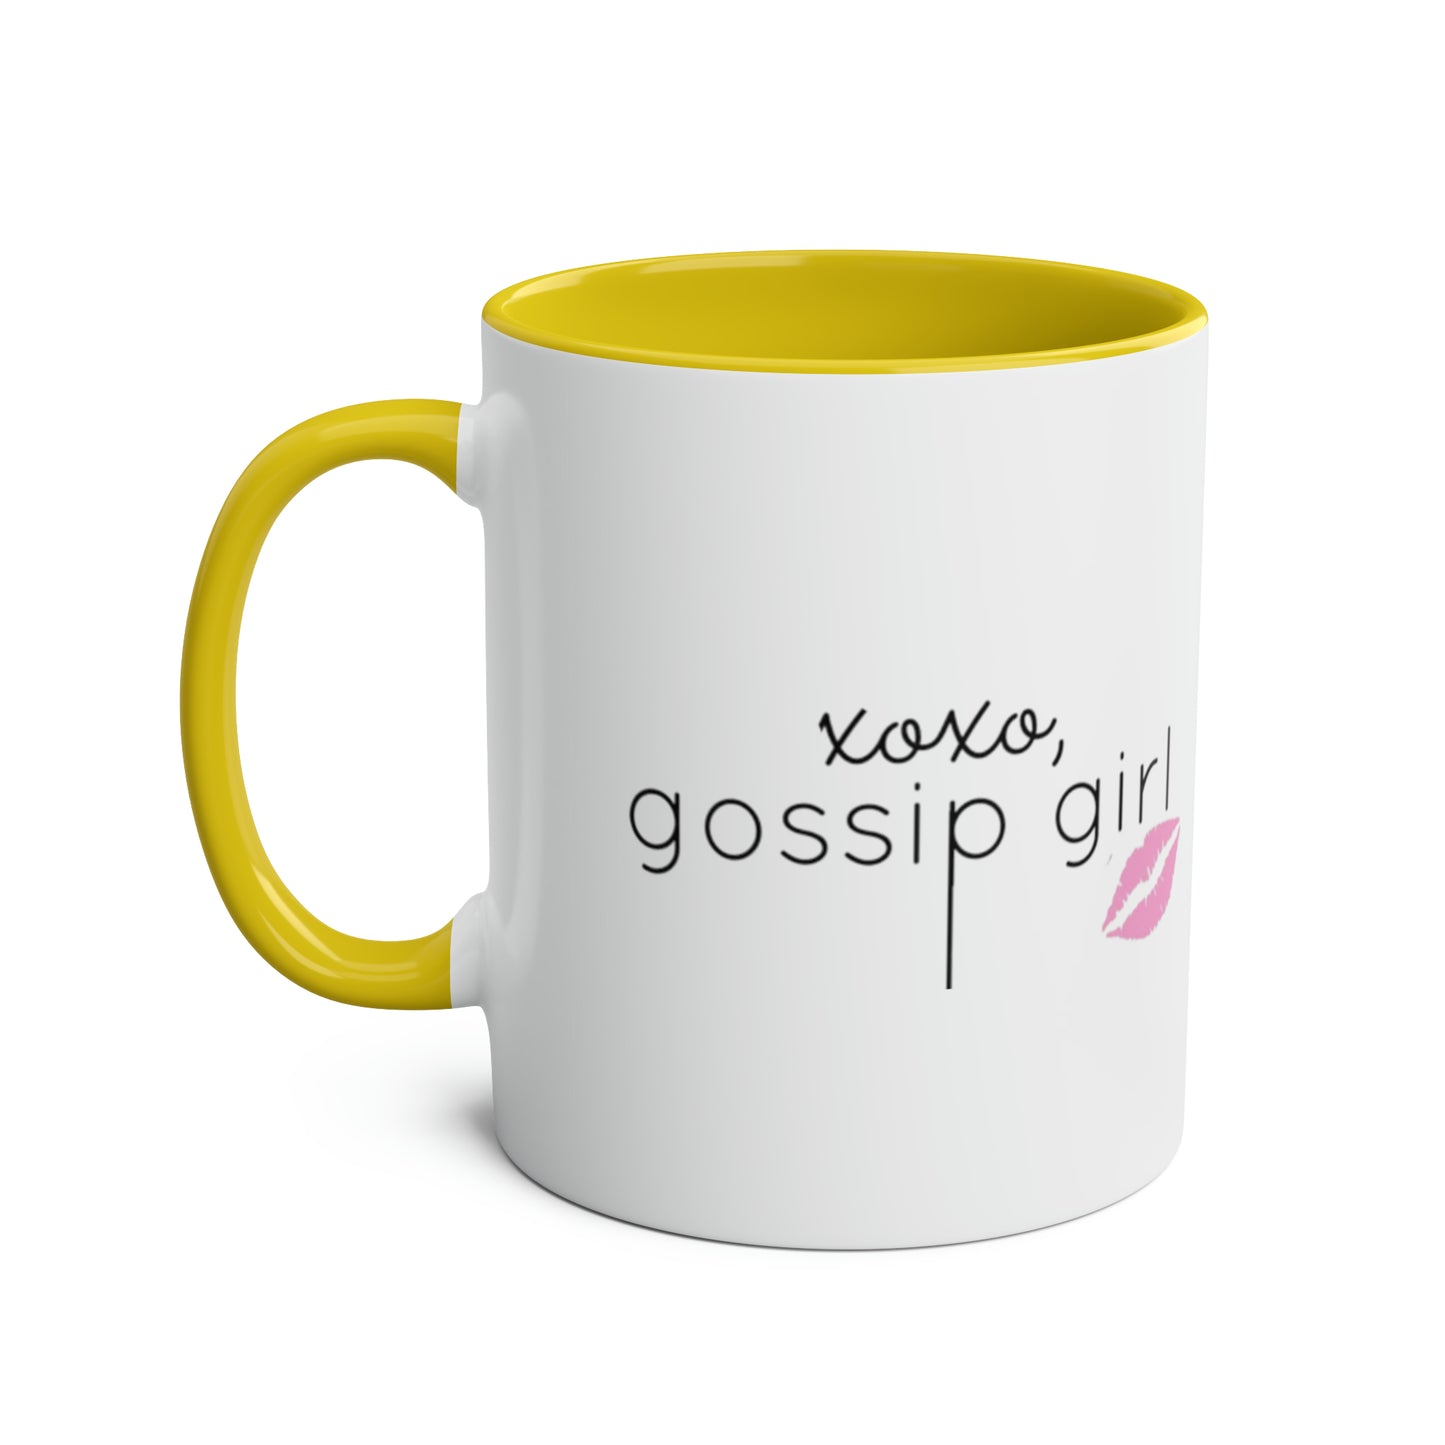 XOXO Gossip Girl / Gossip Girl Mug